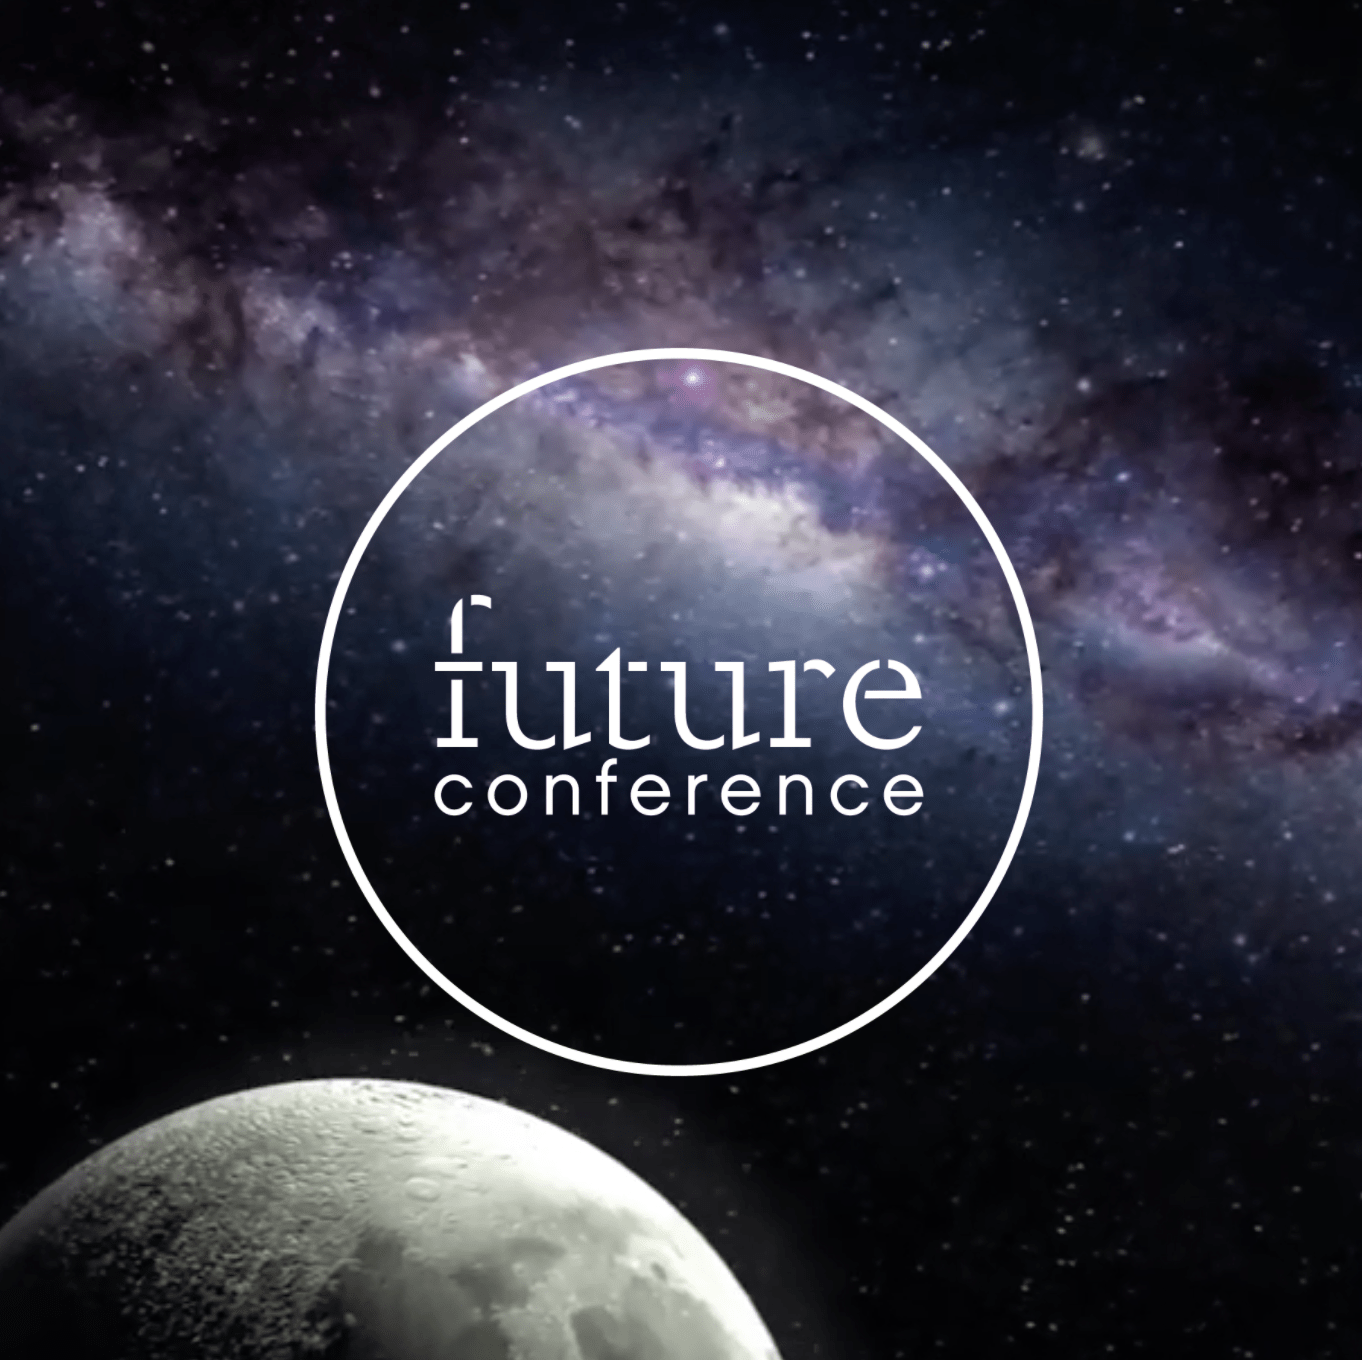 Future Conference